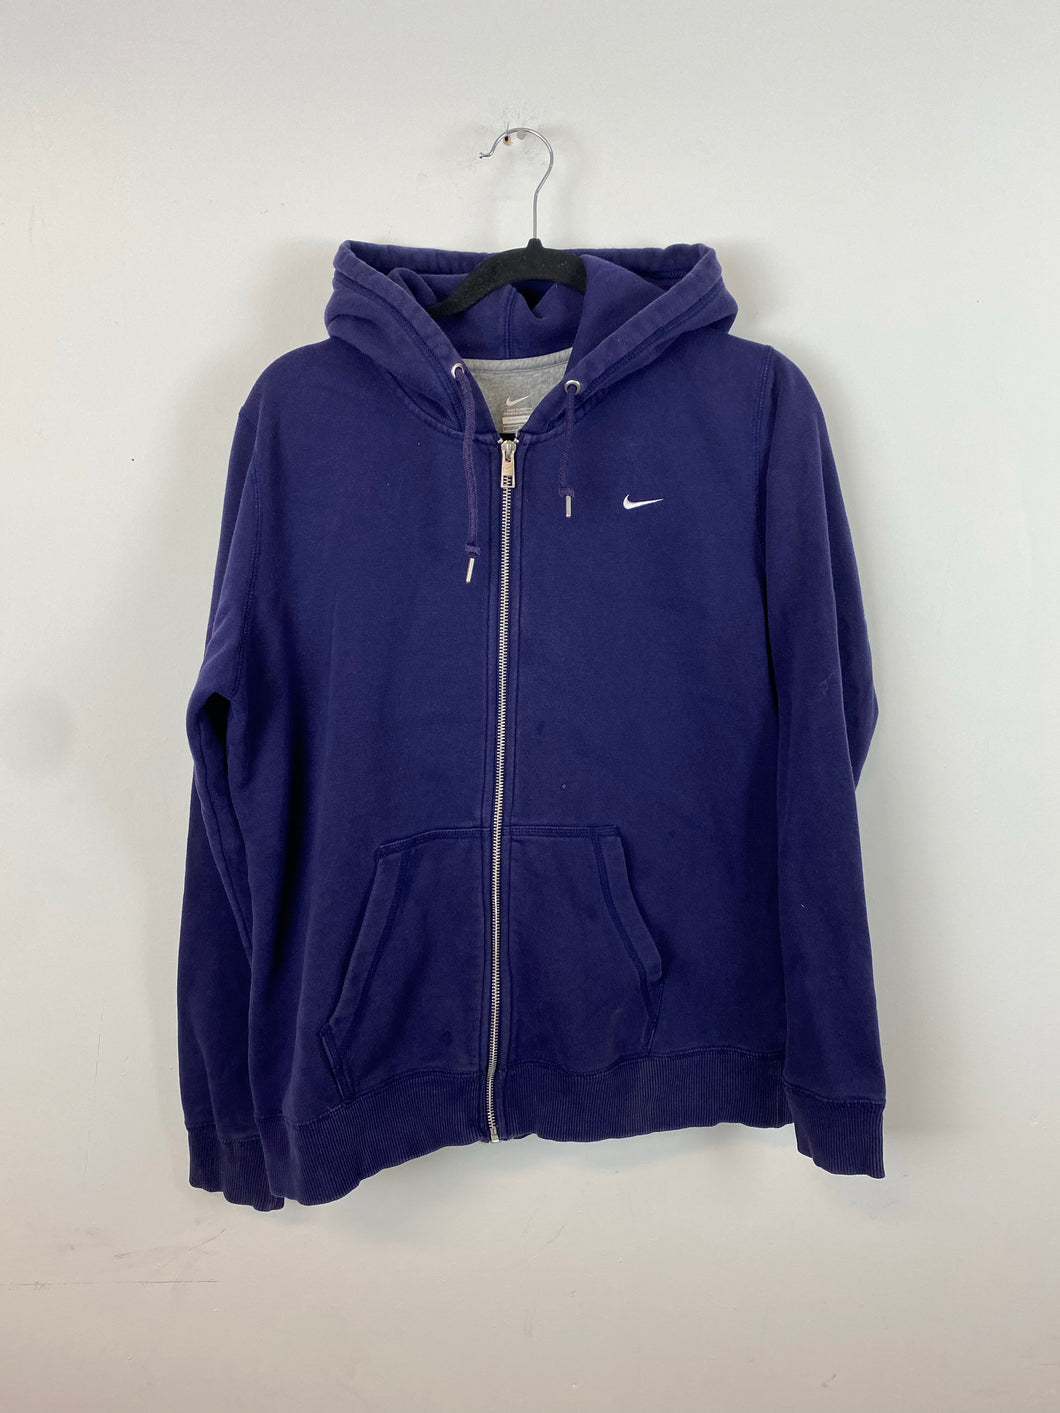 Purple Full zip Nike hoodie - S